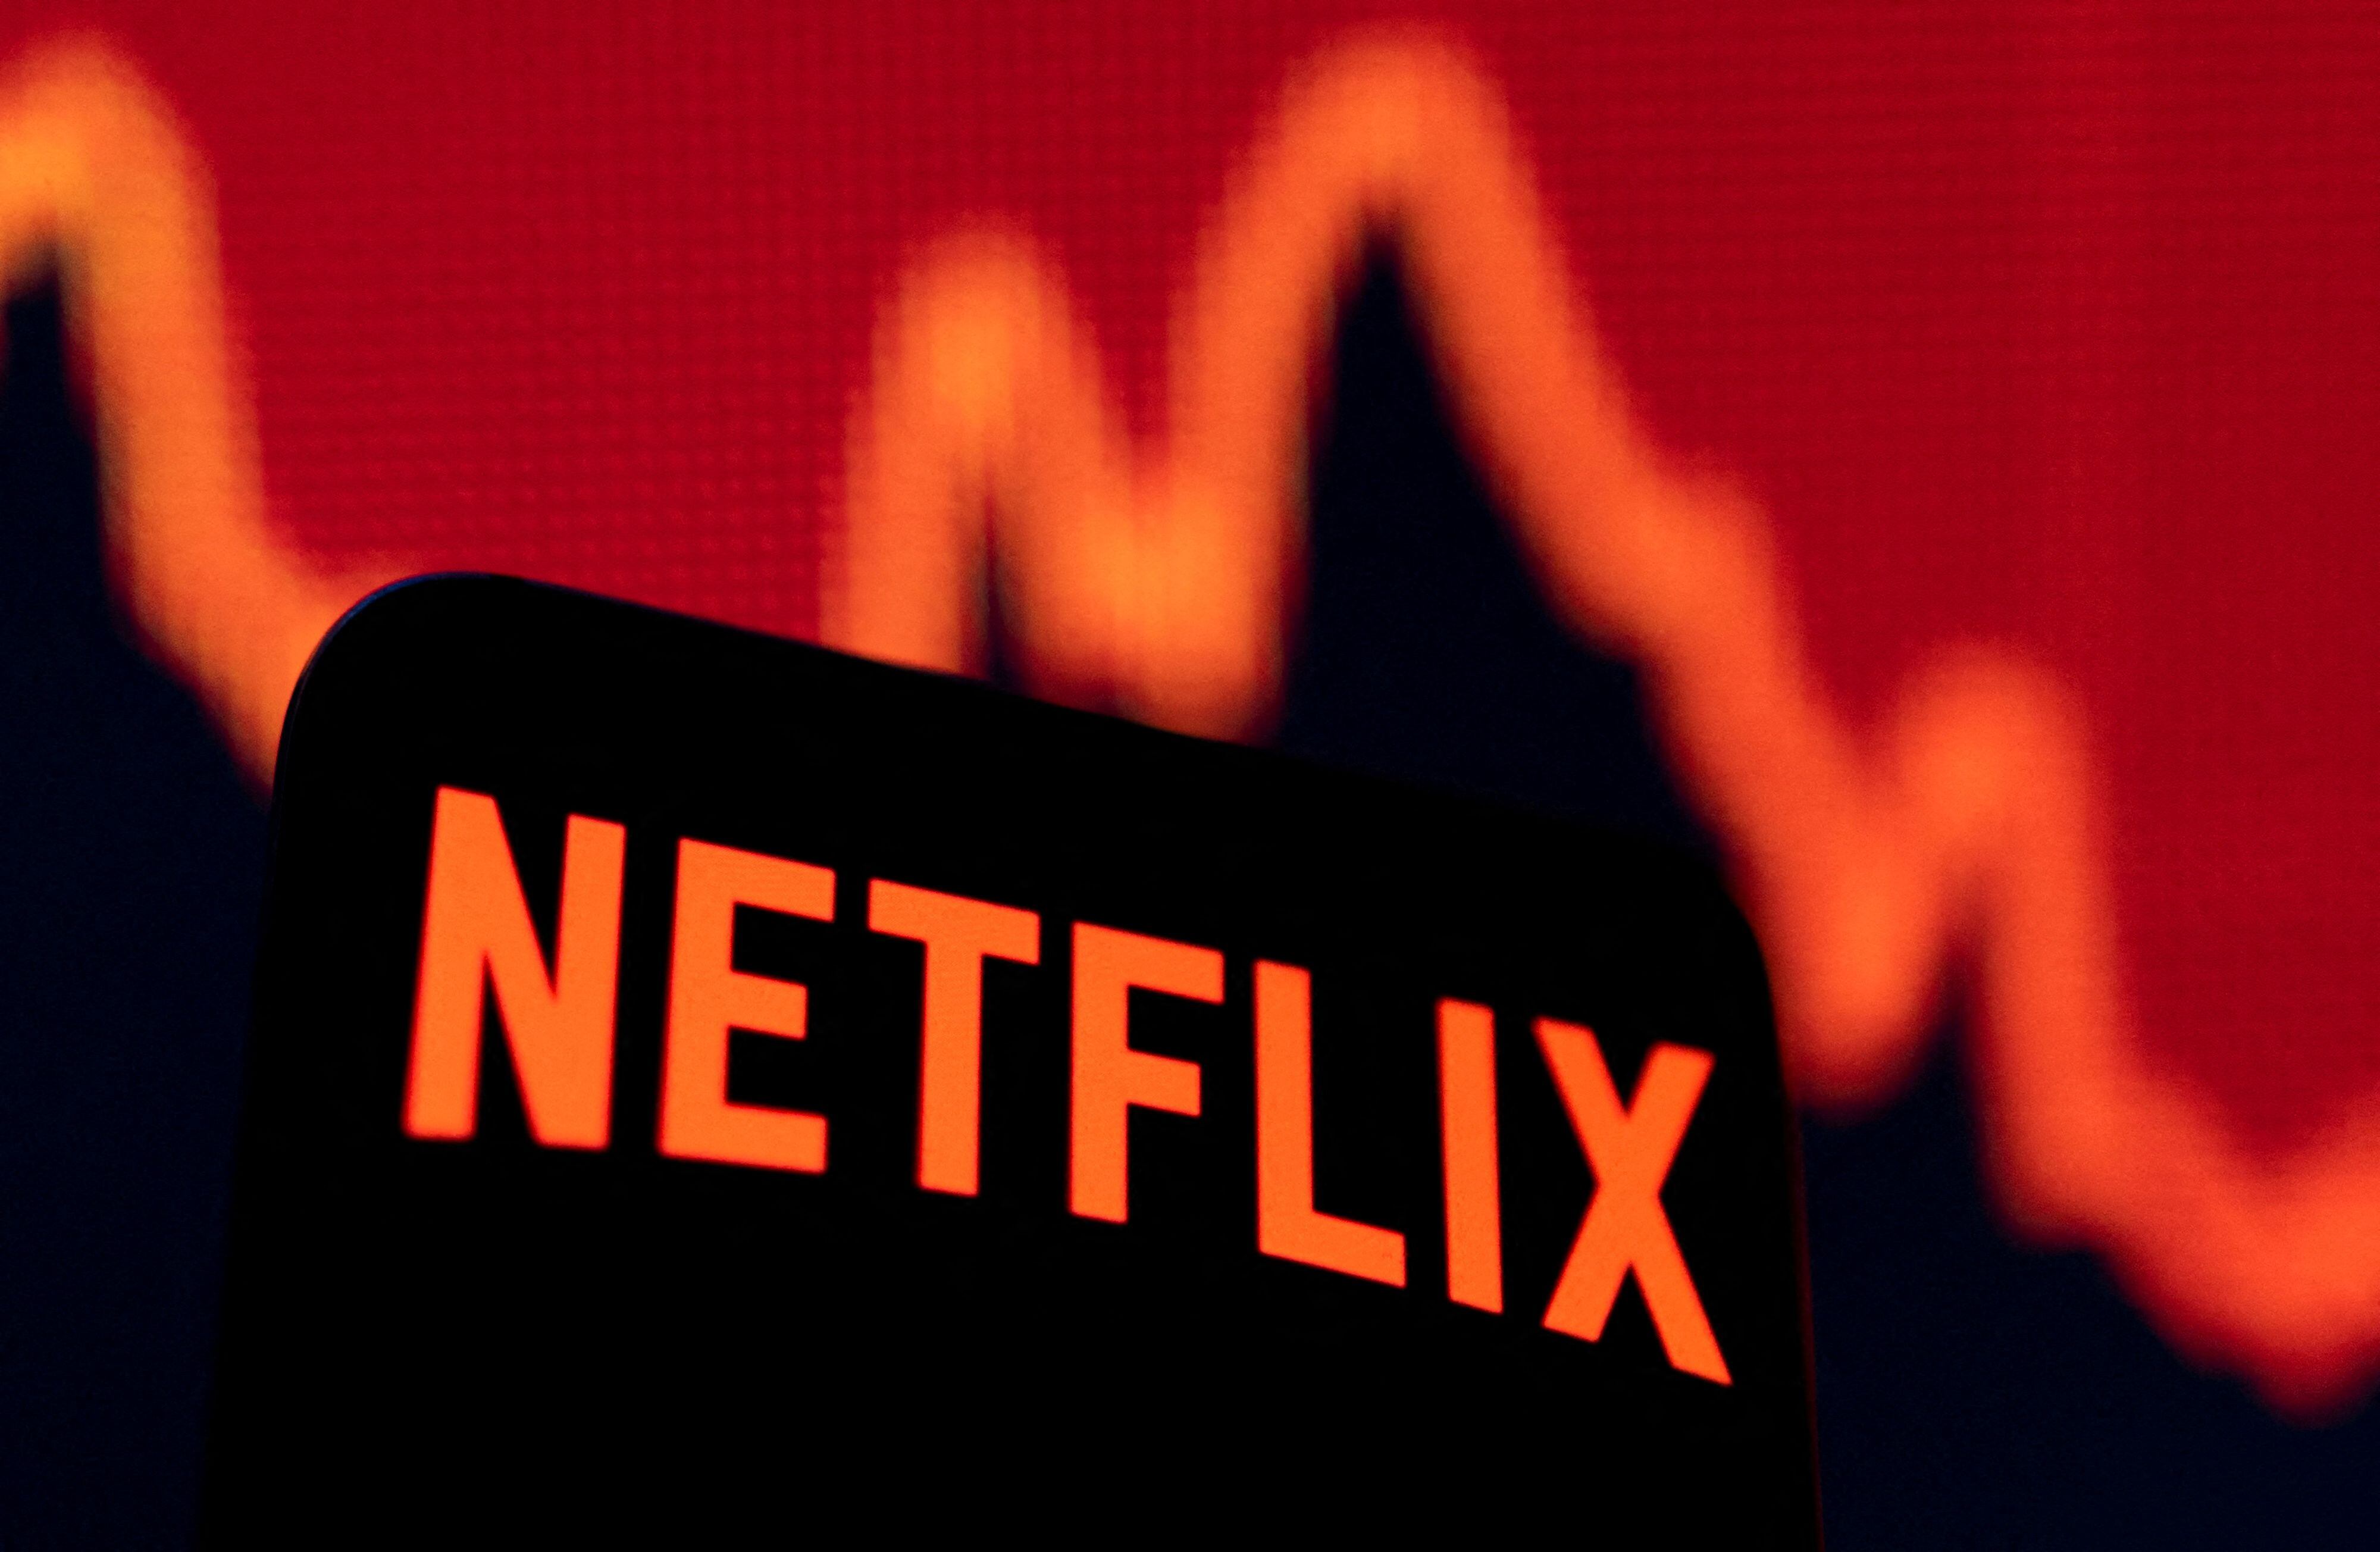 Se derrumba la acción de Netflix
REUTERS/Dado Ruvic/Illustration/File Photo